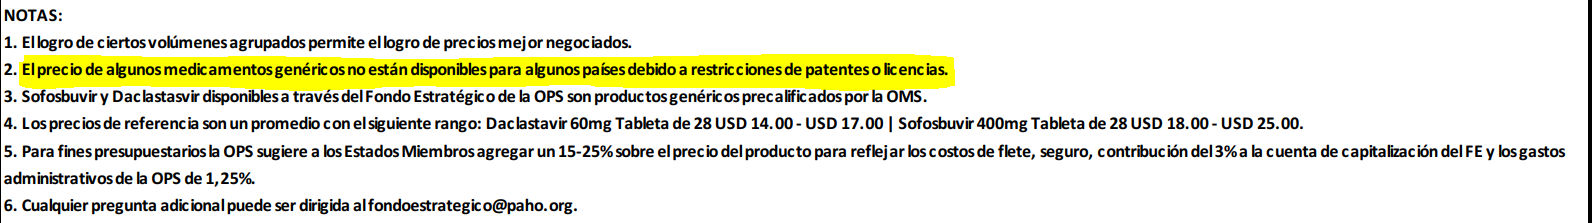 de acuerdo con la misma publicación de la OPS, los precios publicados de "no están disponibles para algunos países debido a restricciones de patentes o licencias"